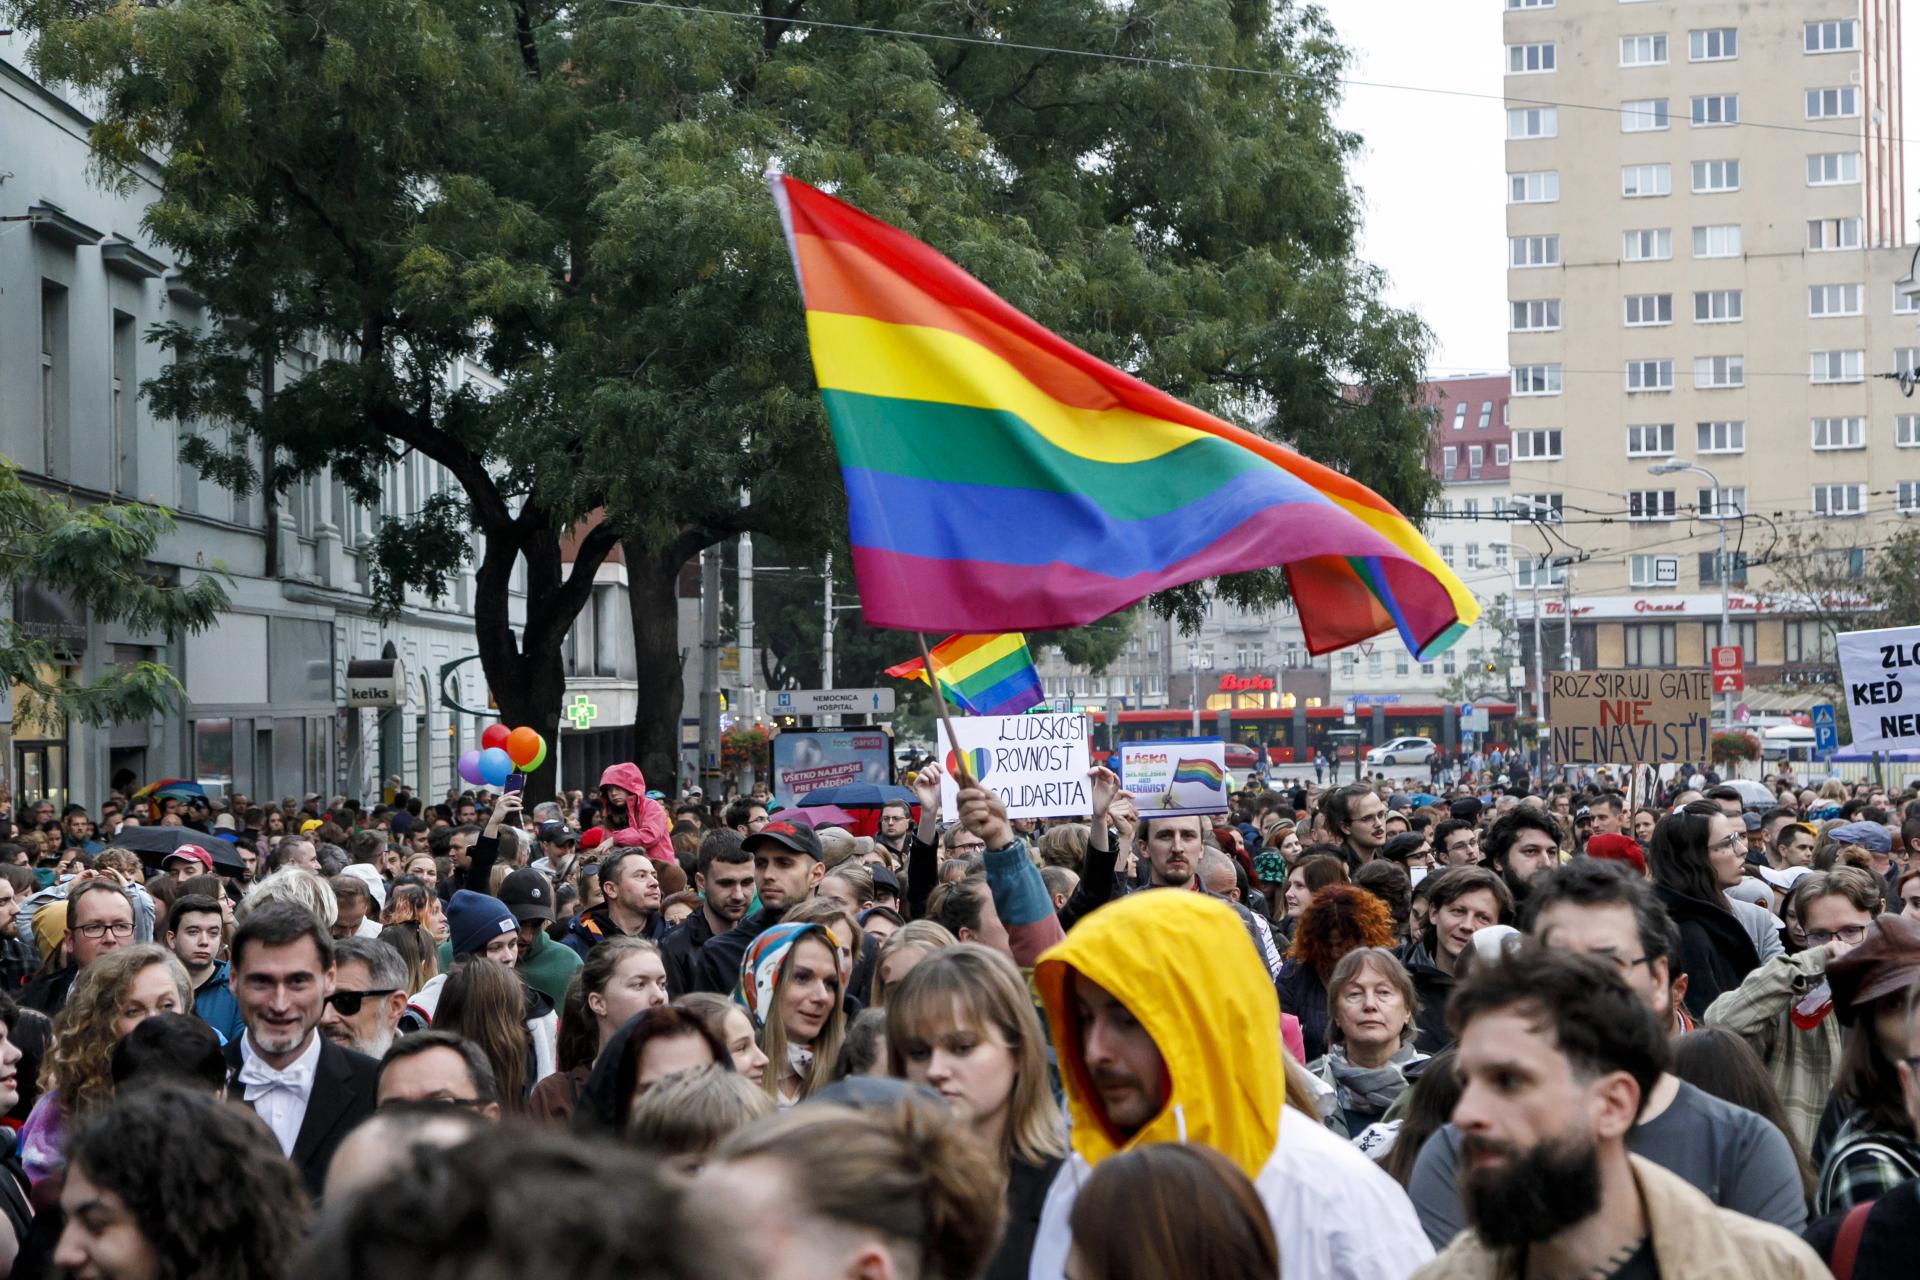 Plánovali teroristický útok na Pride. Polícia odhalila skupinu, ktorá sa podporovala k násiliu